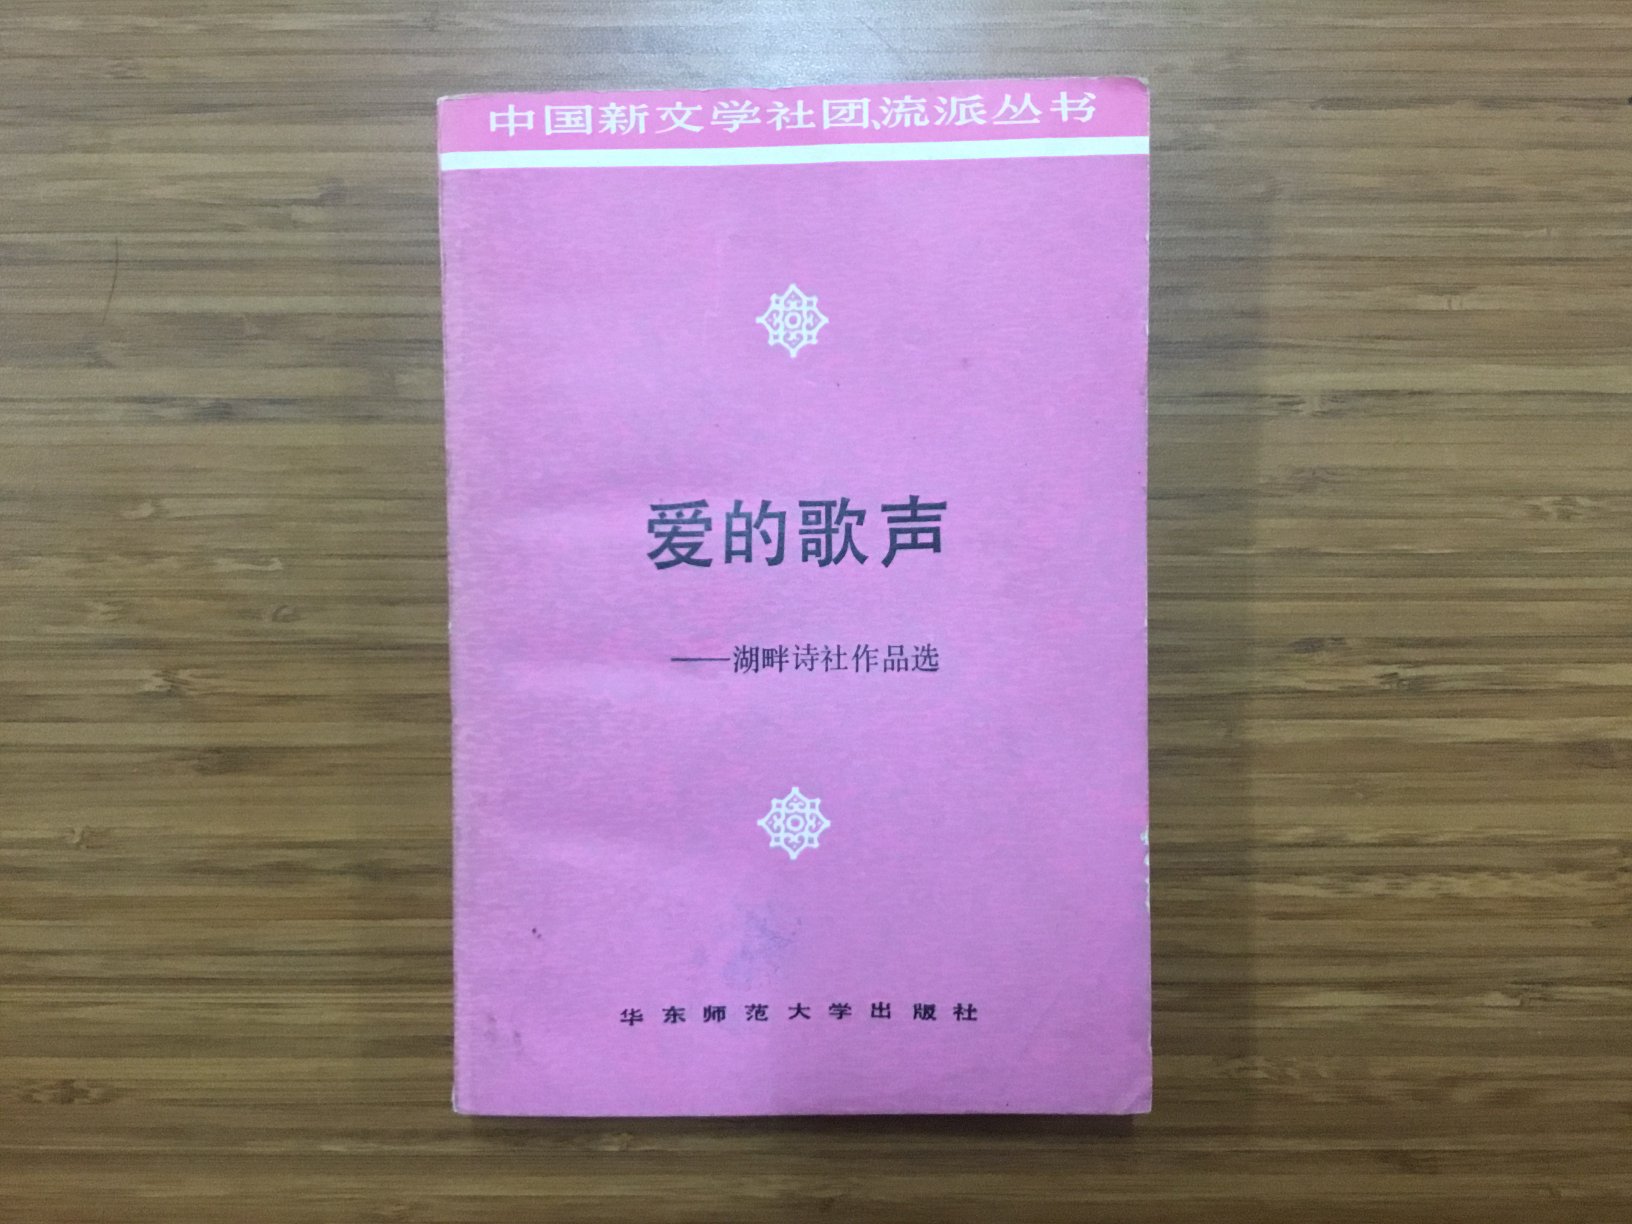 1985年组织“他们文学社”，曾主编《他们》1-5期，被认为是“第三代诗歌”的最主要的代表，形成了对第三代诗群产生重要影响的他们诗群。他们诗群的诗人认为“诗到语言为止”，强调口语写作的重要性，他们的作品对中国现代诗歌的发展产生了积极的促进作用。